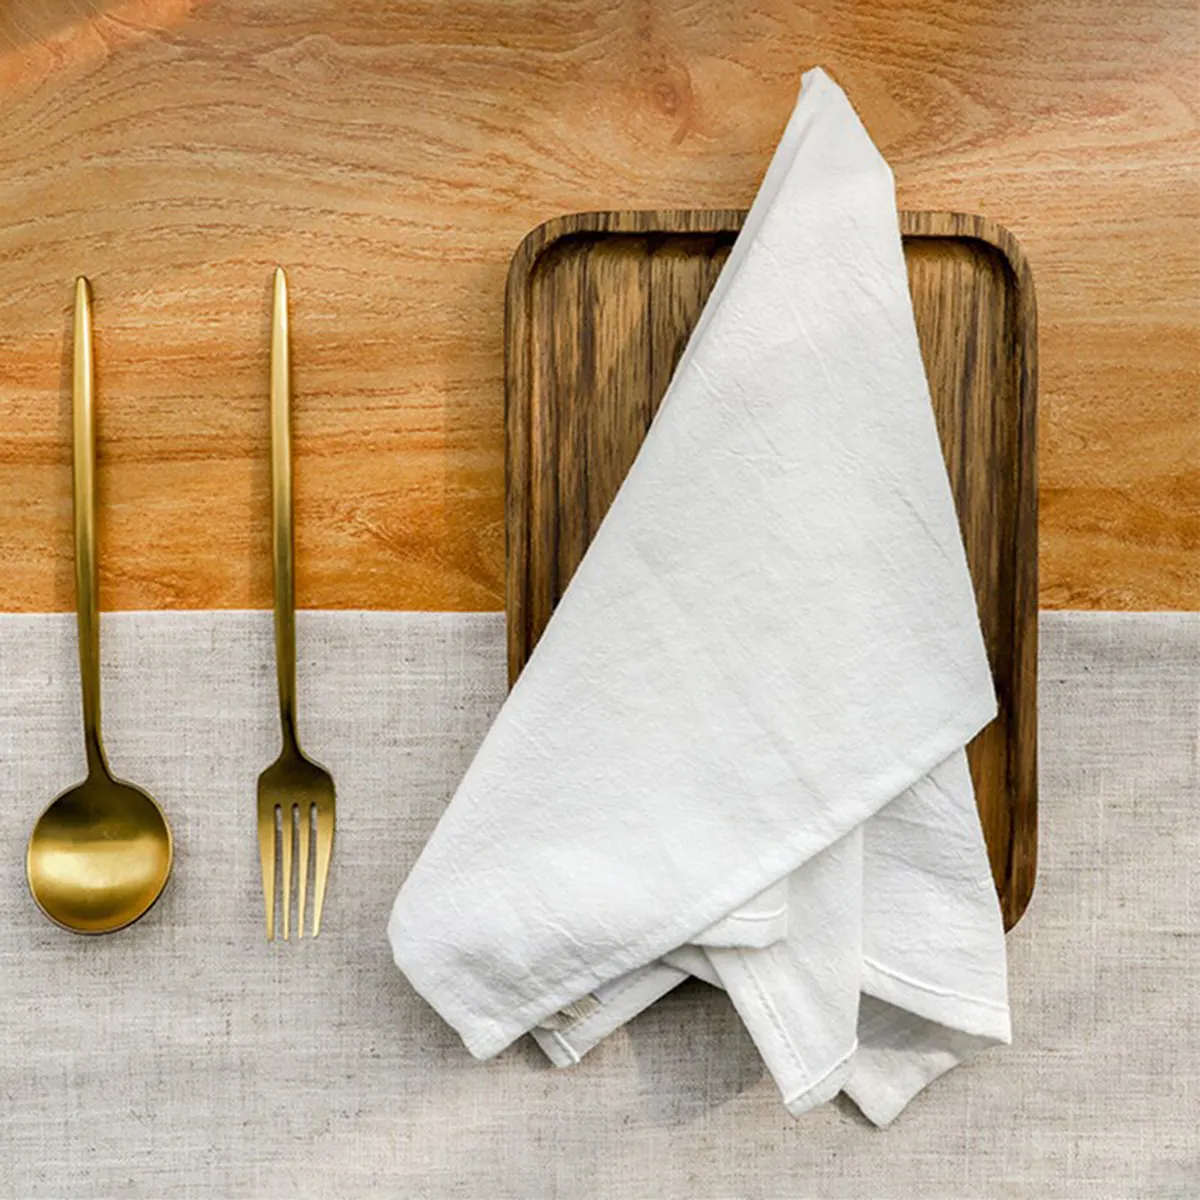 Özelleştirilmiş beyaz Hemstitch buruşuk pamuk peçeteler sınır yeniden kullanılabilir yumuşak düğün peçeteler küçük masa örtüsü akşam yemeği peçete